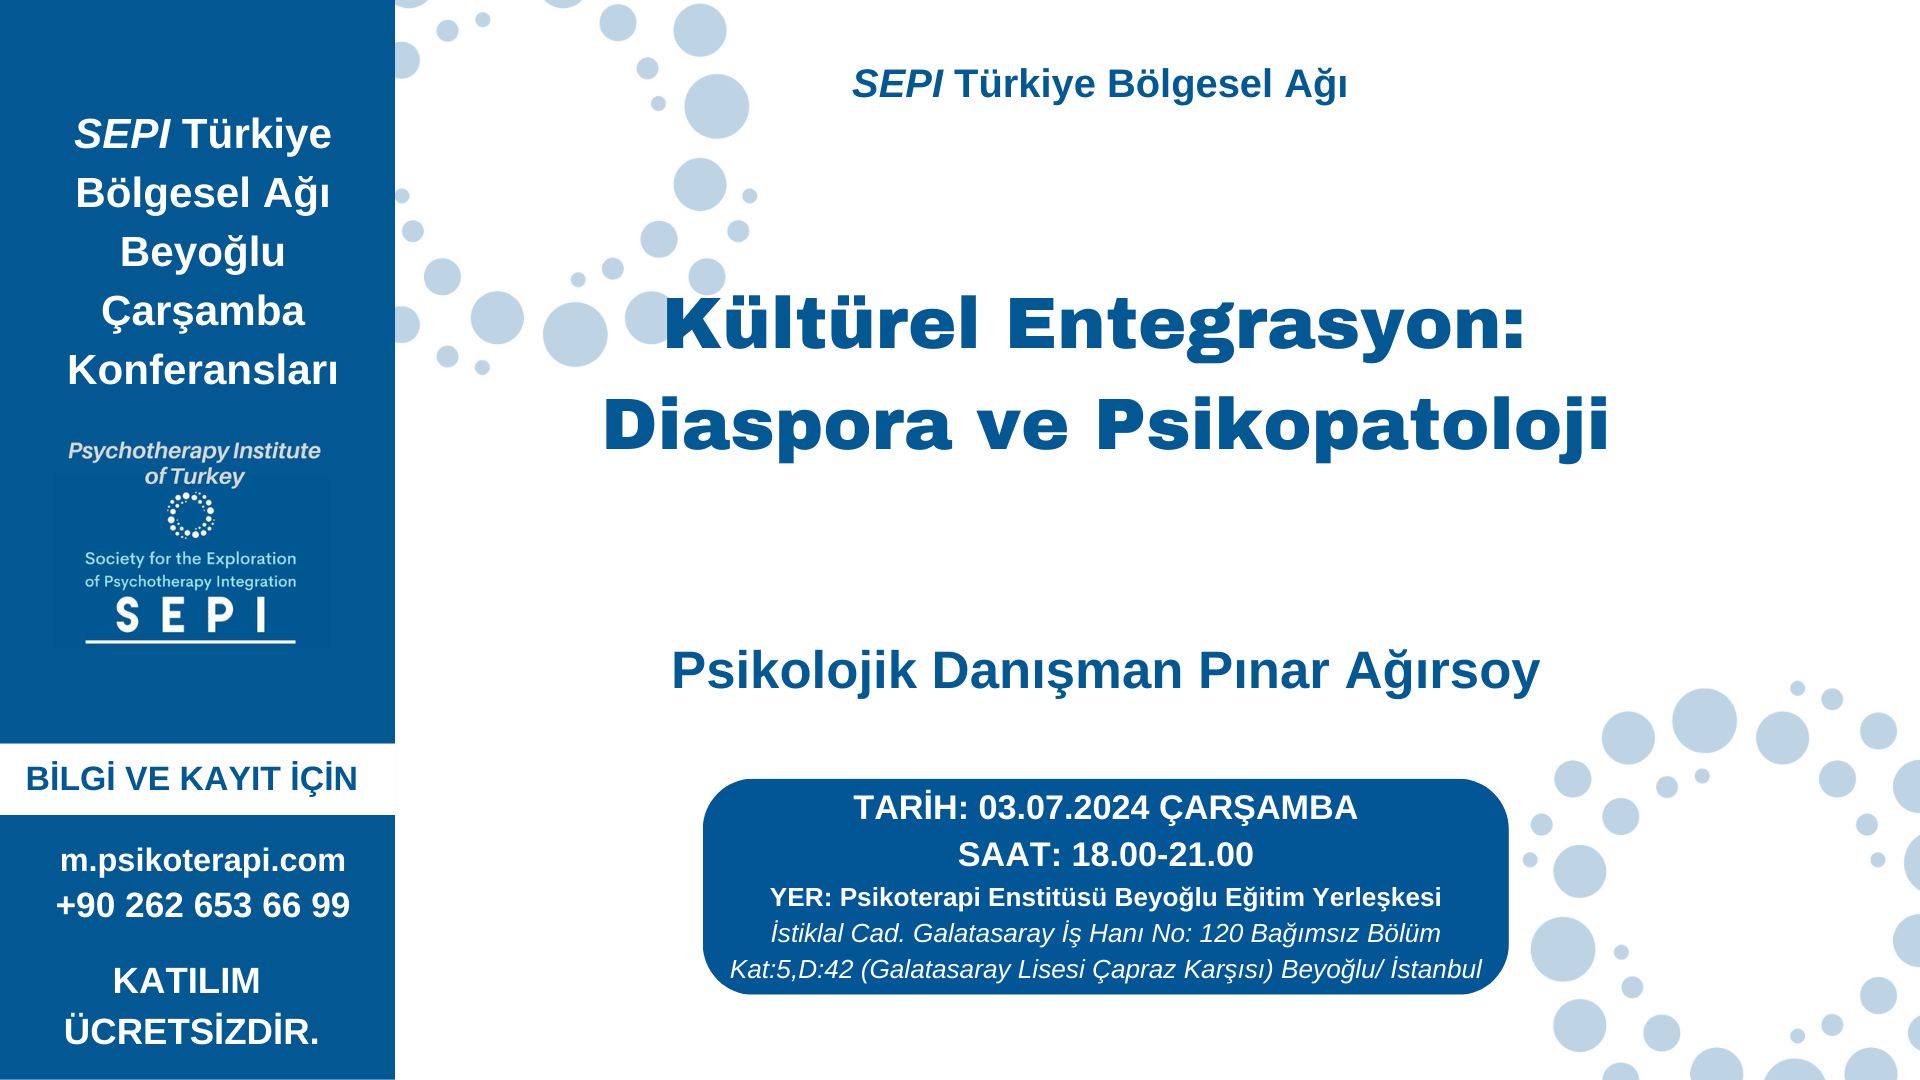 Psk. Dan. Pınar Ağırsoy - Kültürel Entegrasyon, Diaspora ve Psikopatoloji